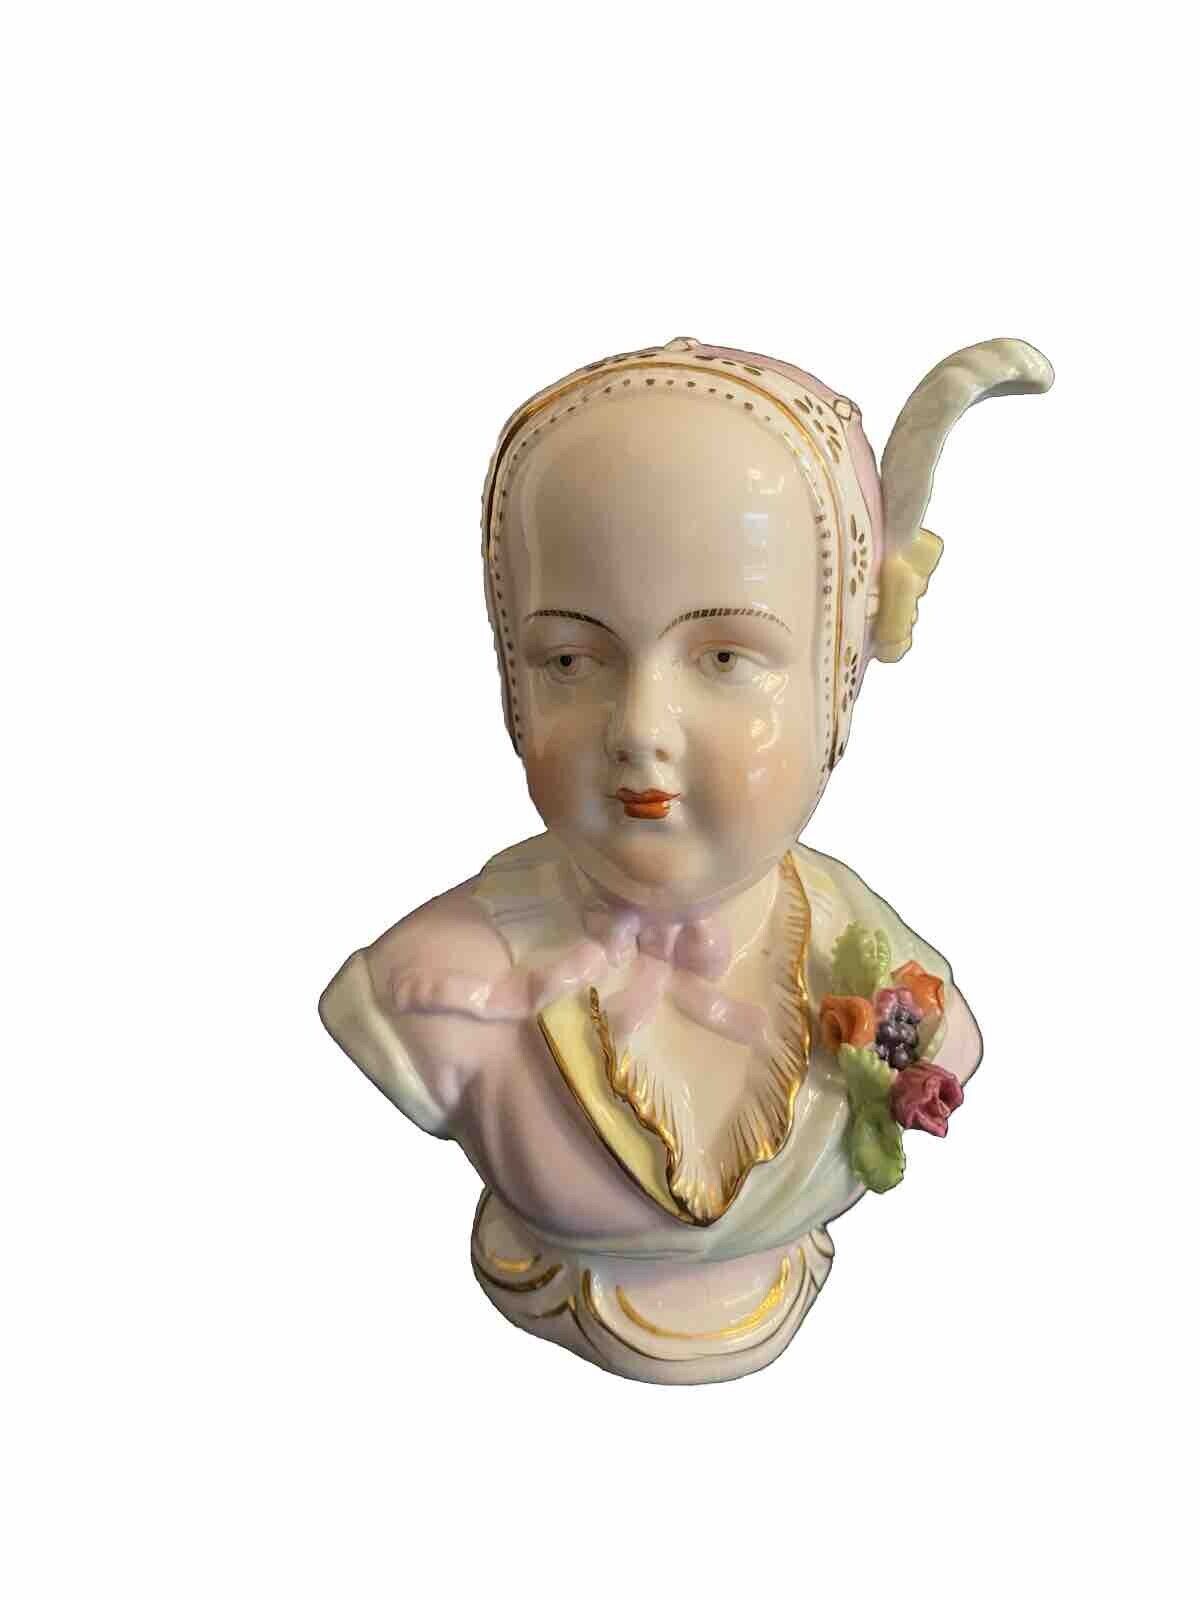 Antique German Sitzendorf Porcelain Figurine Bust in Bonnet